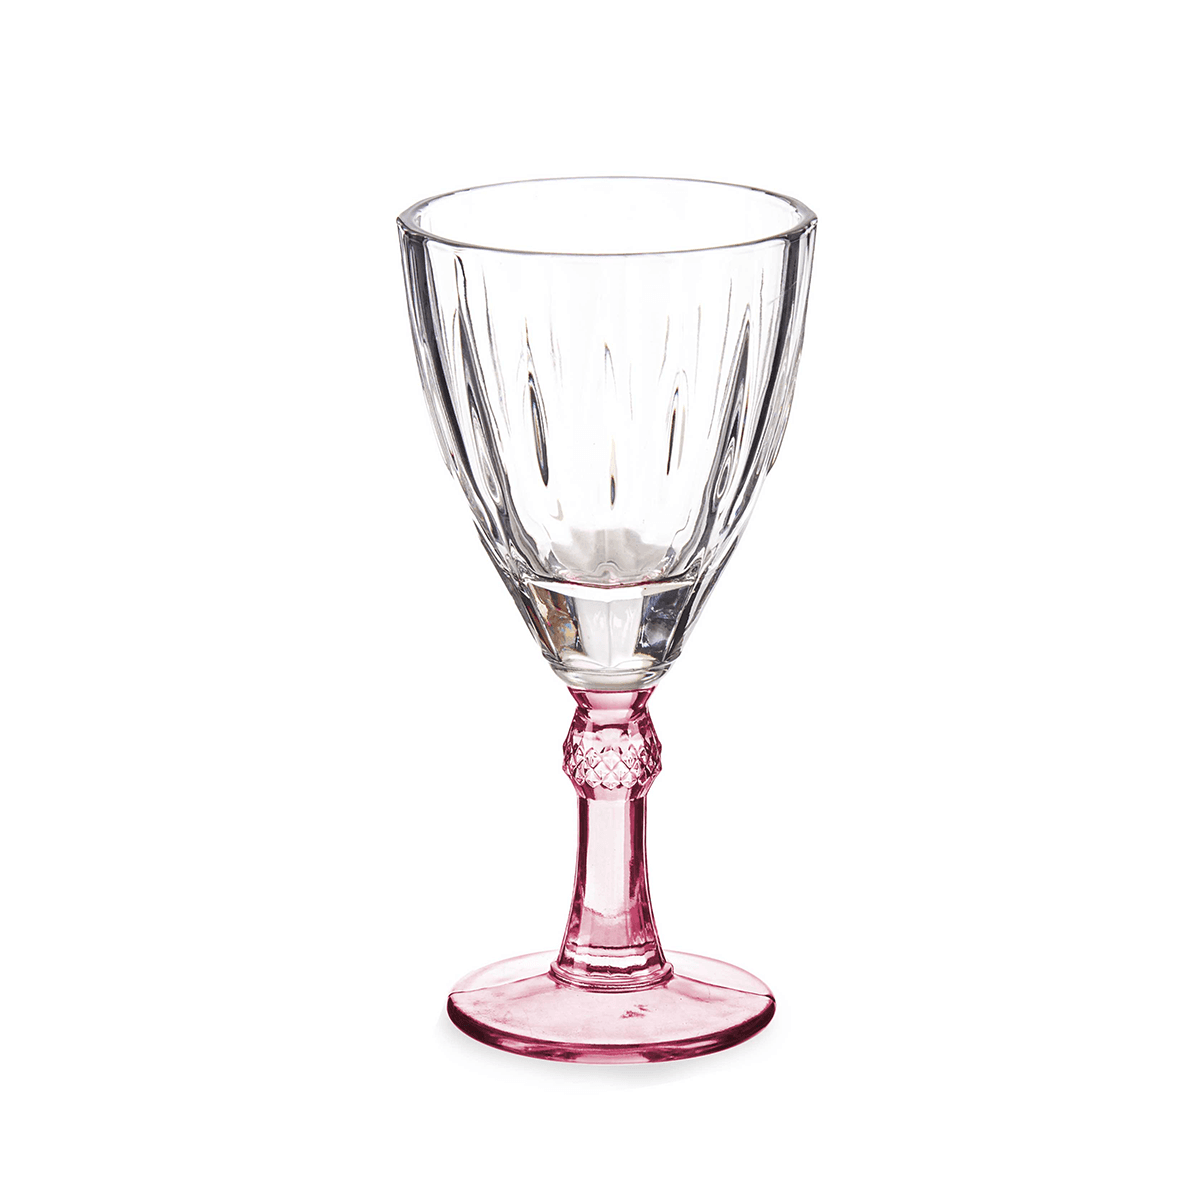 كاسات عصير 6 قطع 275 مل زجاج زهري فيفالتو Vivalto 6 Pieces Glass Water Cup Pink Color 275 ml Set Transparent Glass